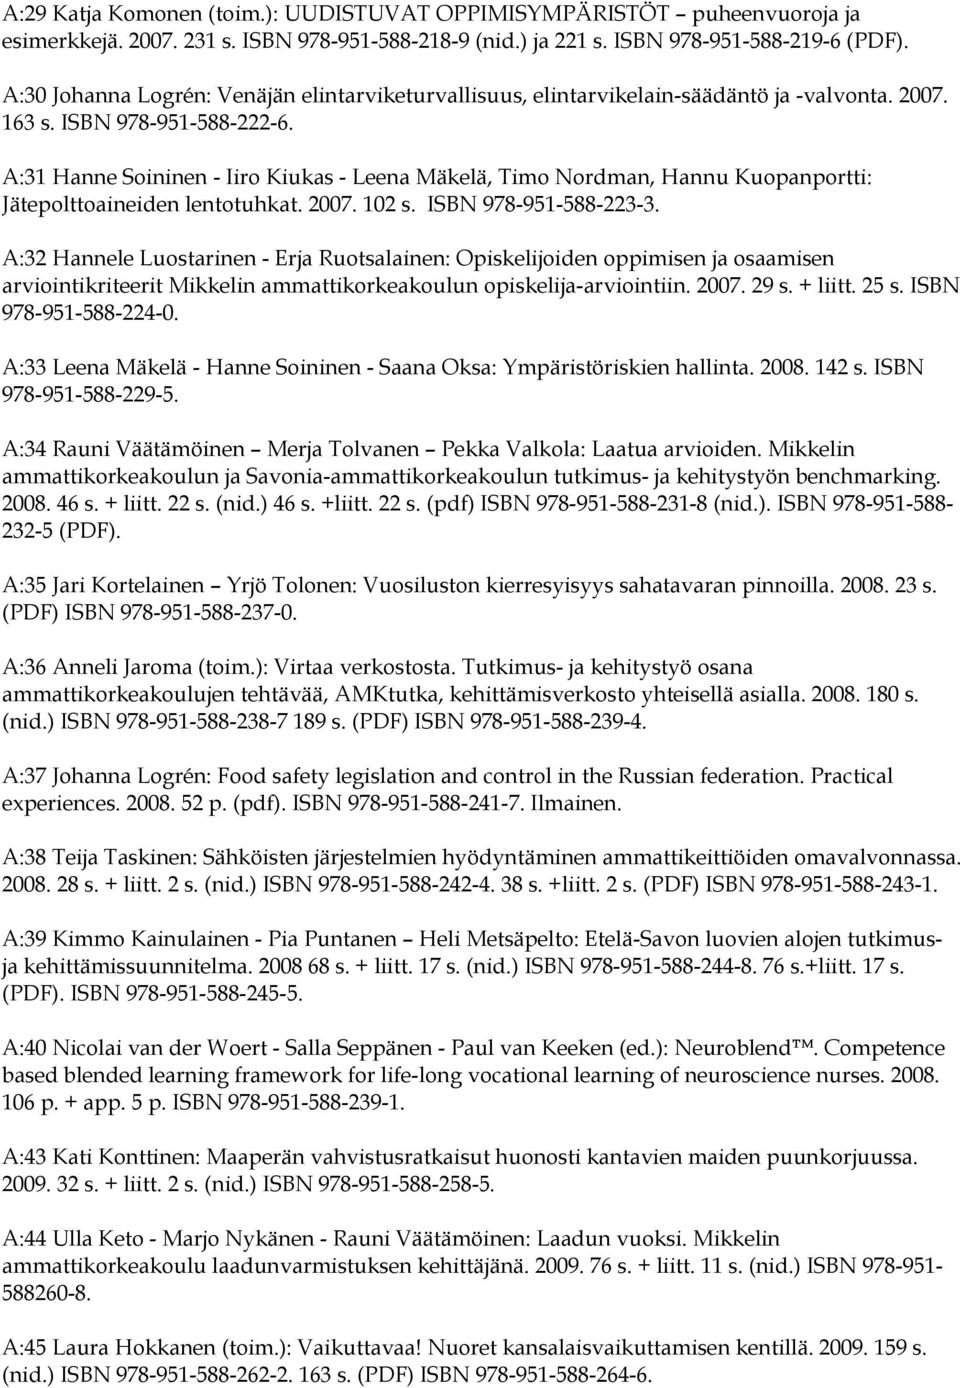 A:31 Hanne Soininen - Iiro Kiukas - Leena Mäkelä, Timo Nordman, Hannu Kuopanportti: Jätepolttoaineiden lentotuhkat. 2007. 102 s. ISBN 978-951-588-223-3.